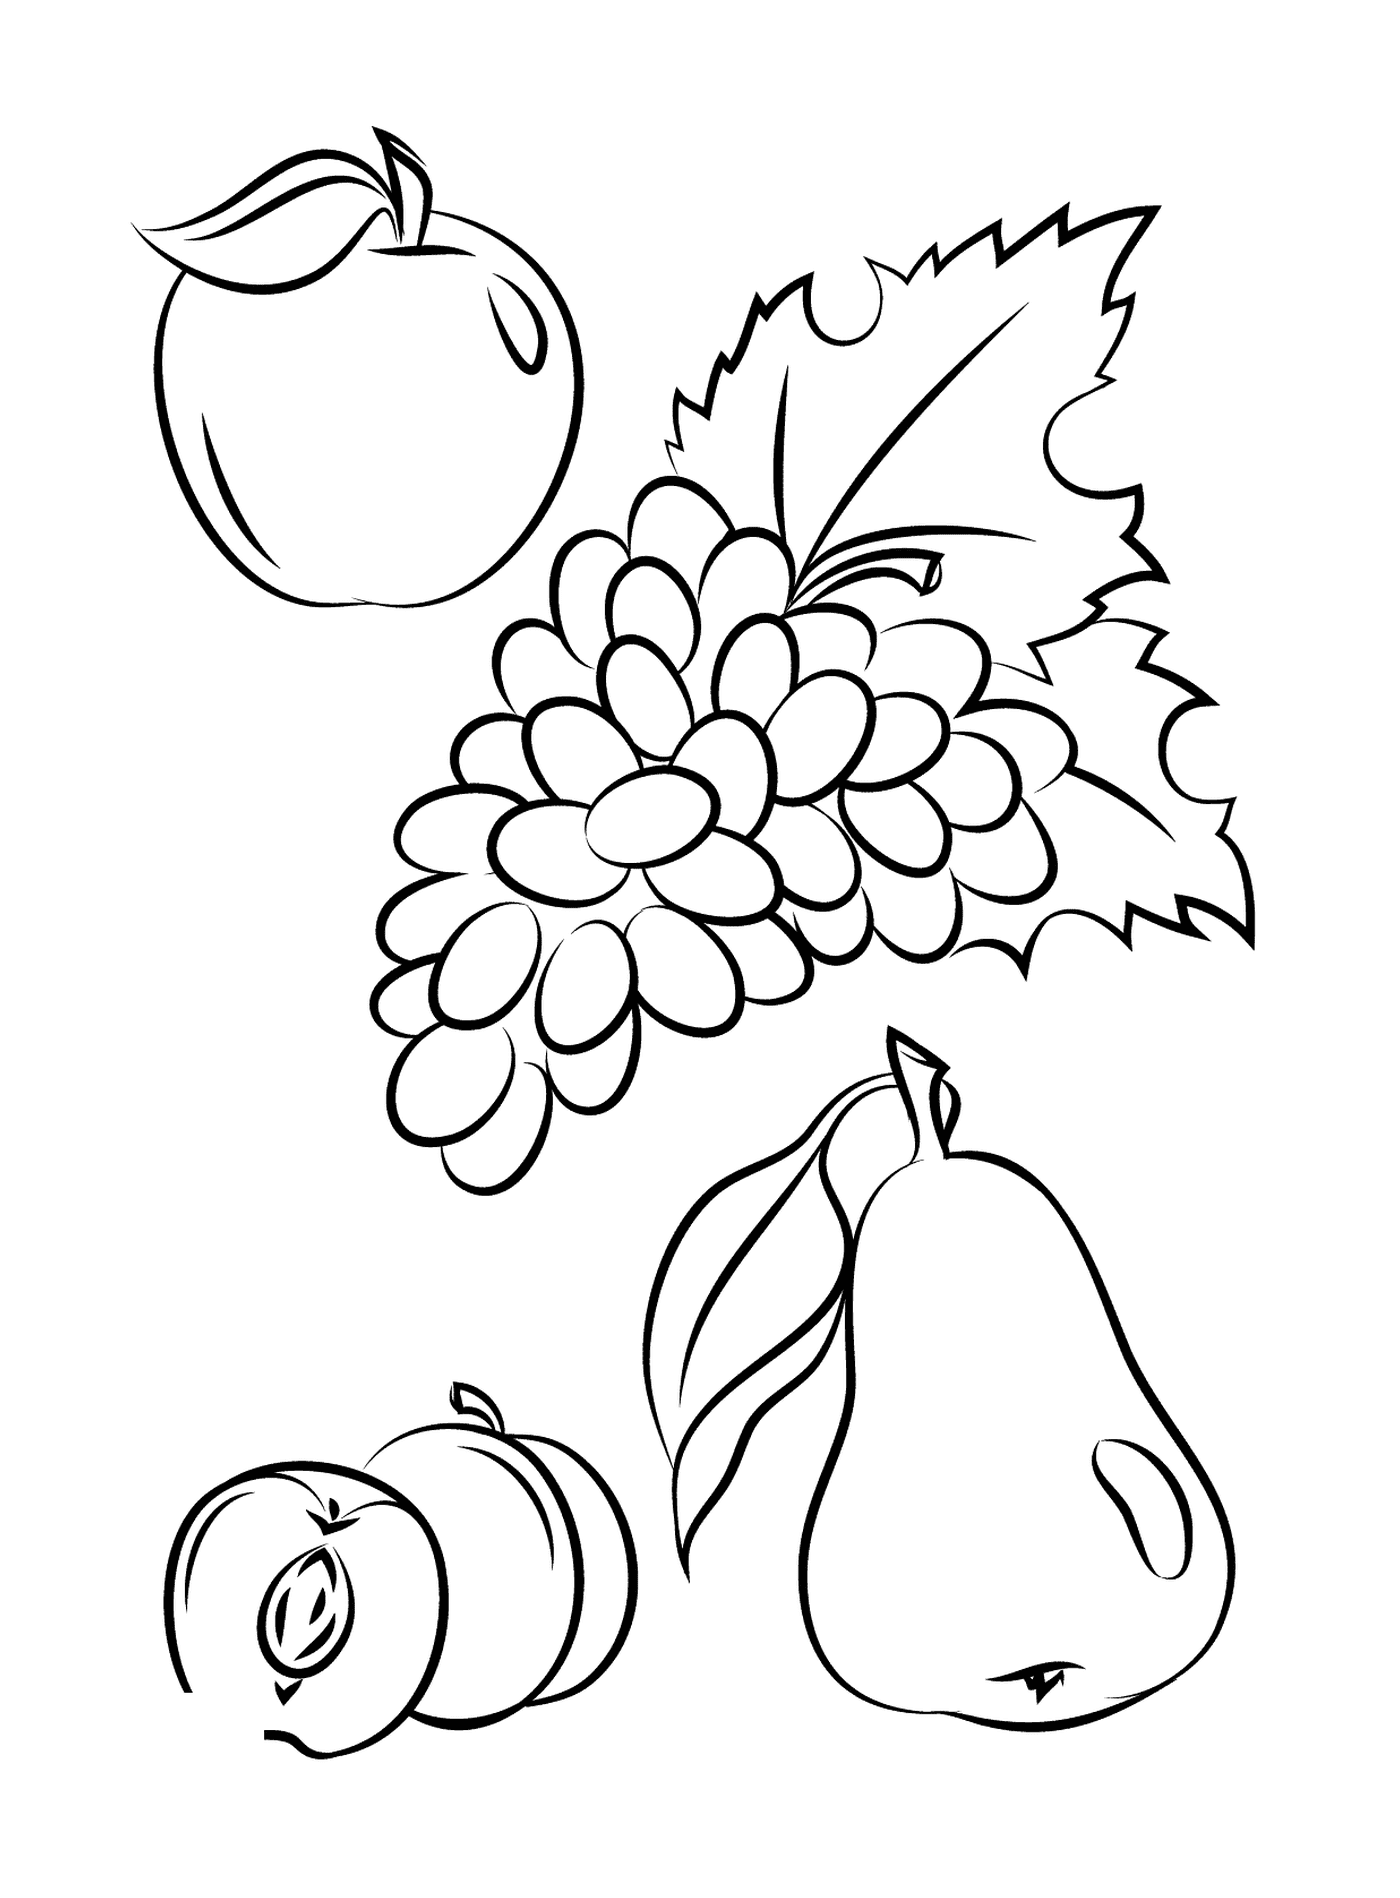  An apple, a pear, grapes and a peache 